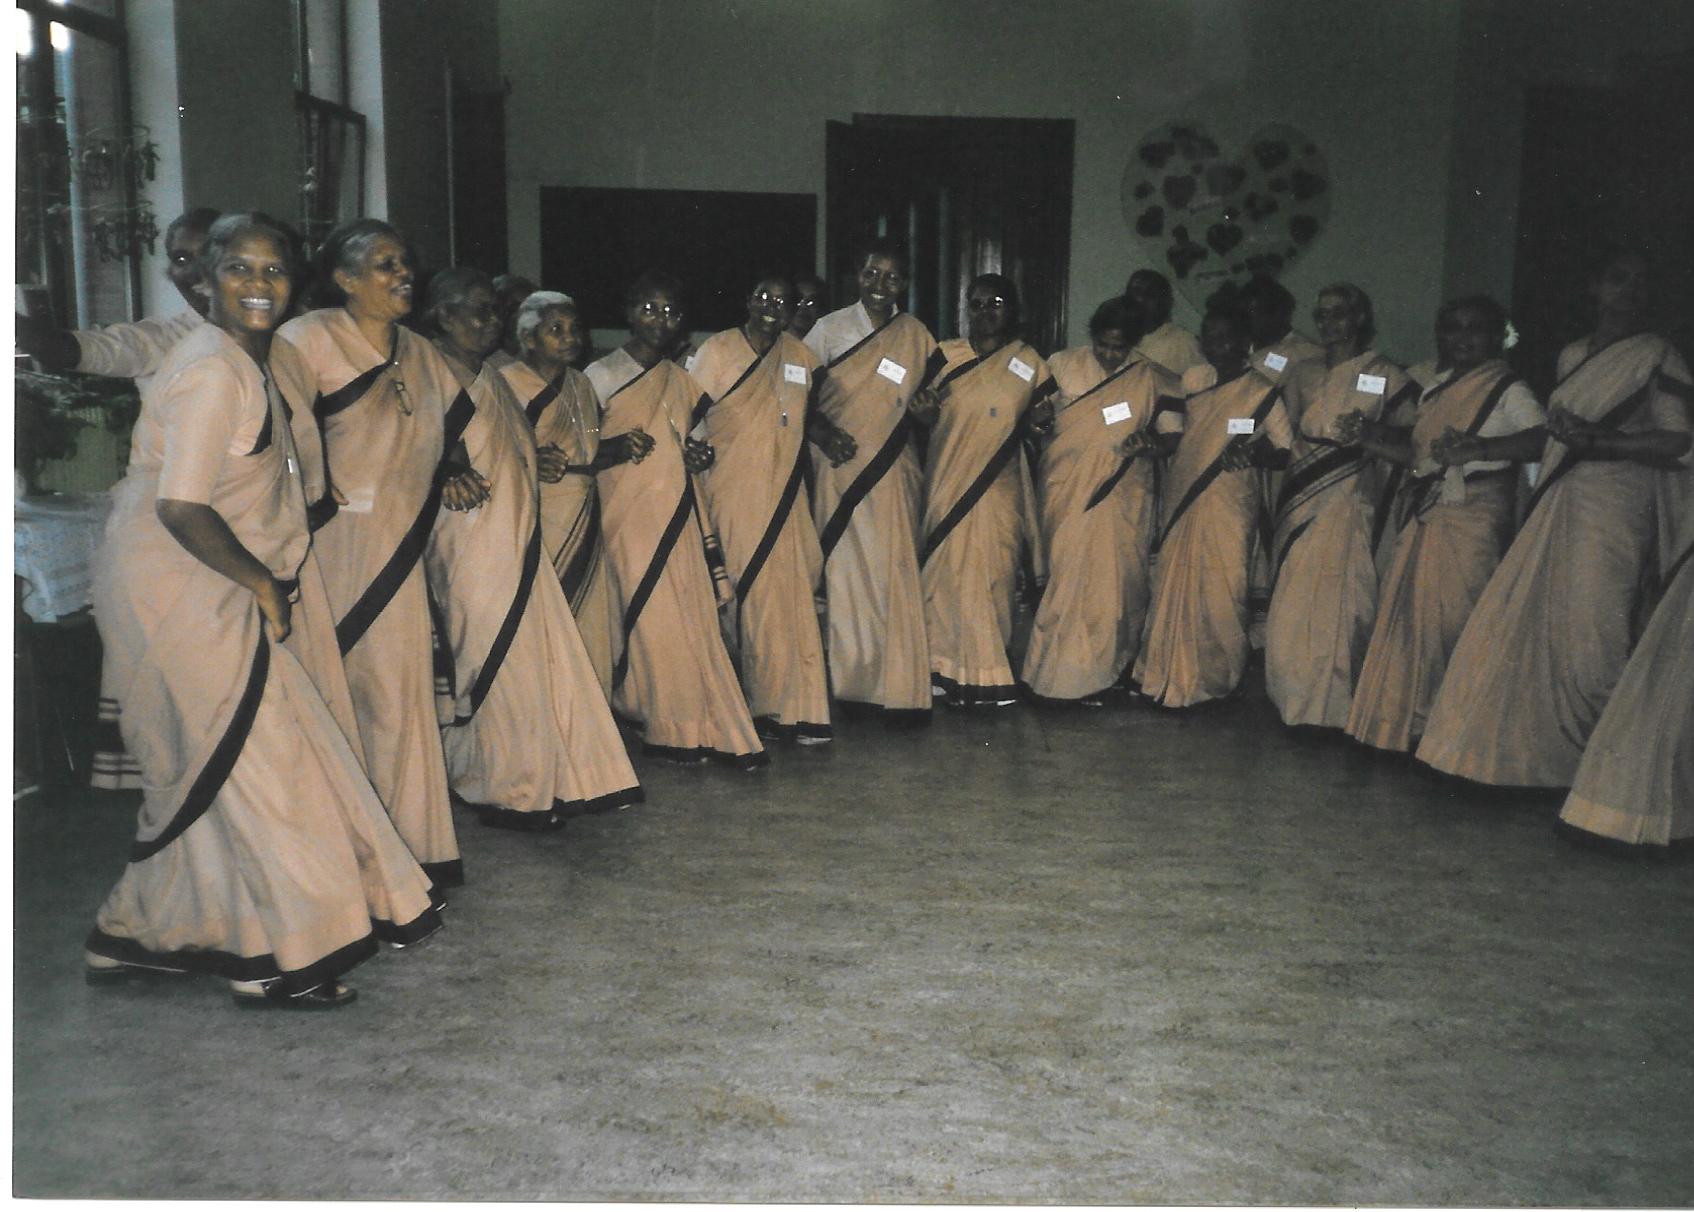 18 Indian delegates dancing